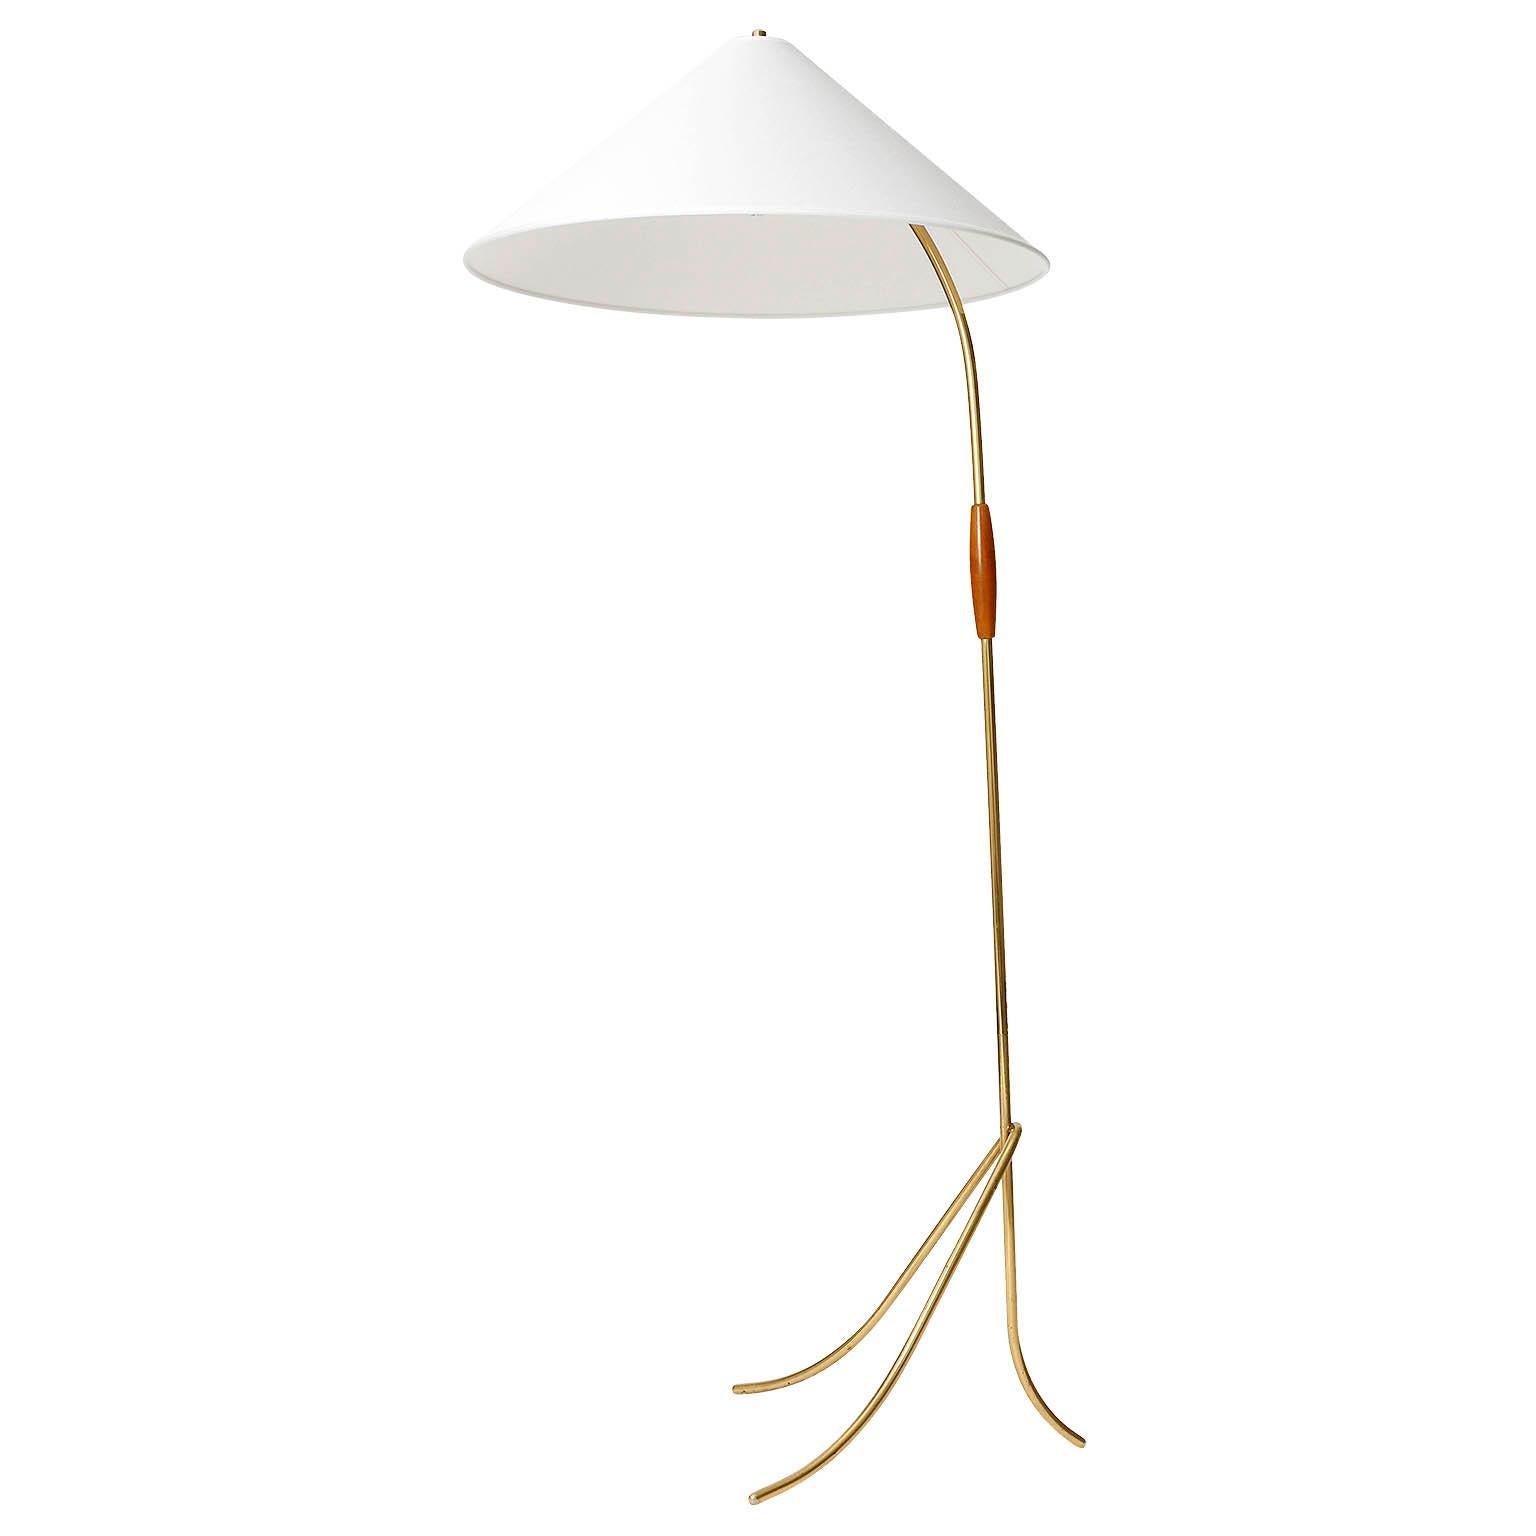 Un magnifique lampadaire de Rupert Nikoll, Autriche, fabriqué au milieu du siècle, vers 1960 (fin des années 1950 ou début des années 1960).
La lampe est très similaire au modèle de lampadaire 'Hase' (engl. lapin) conçu par J.T. Kalmar.
Un abat-jour